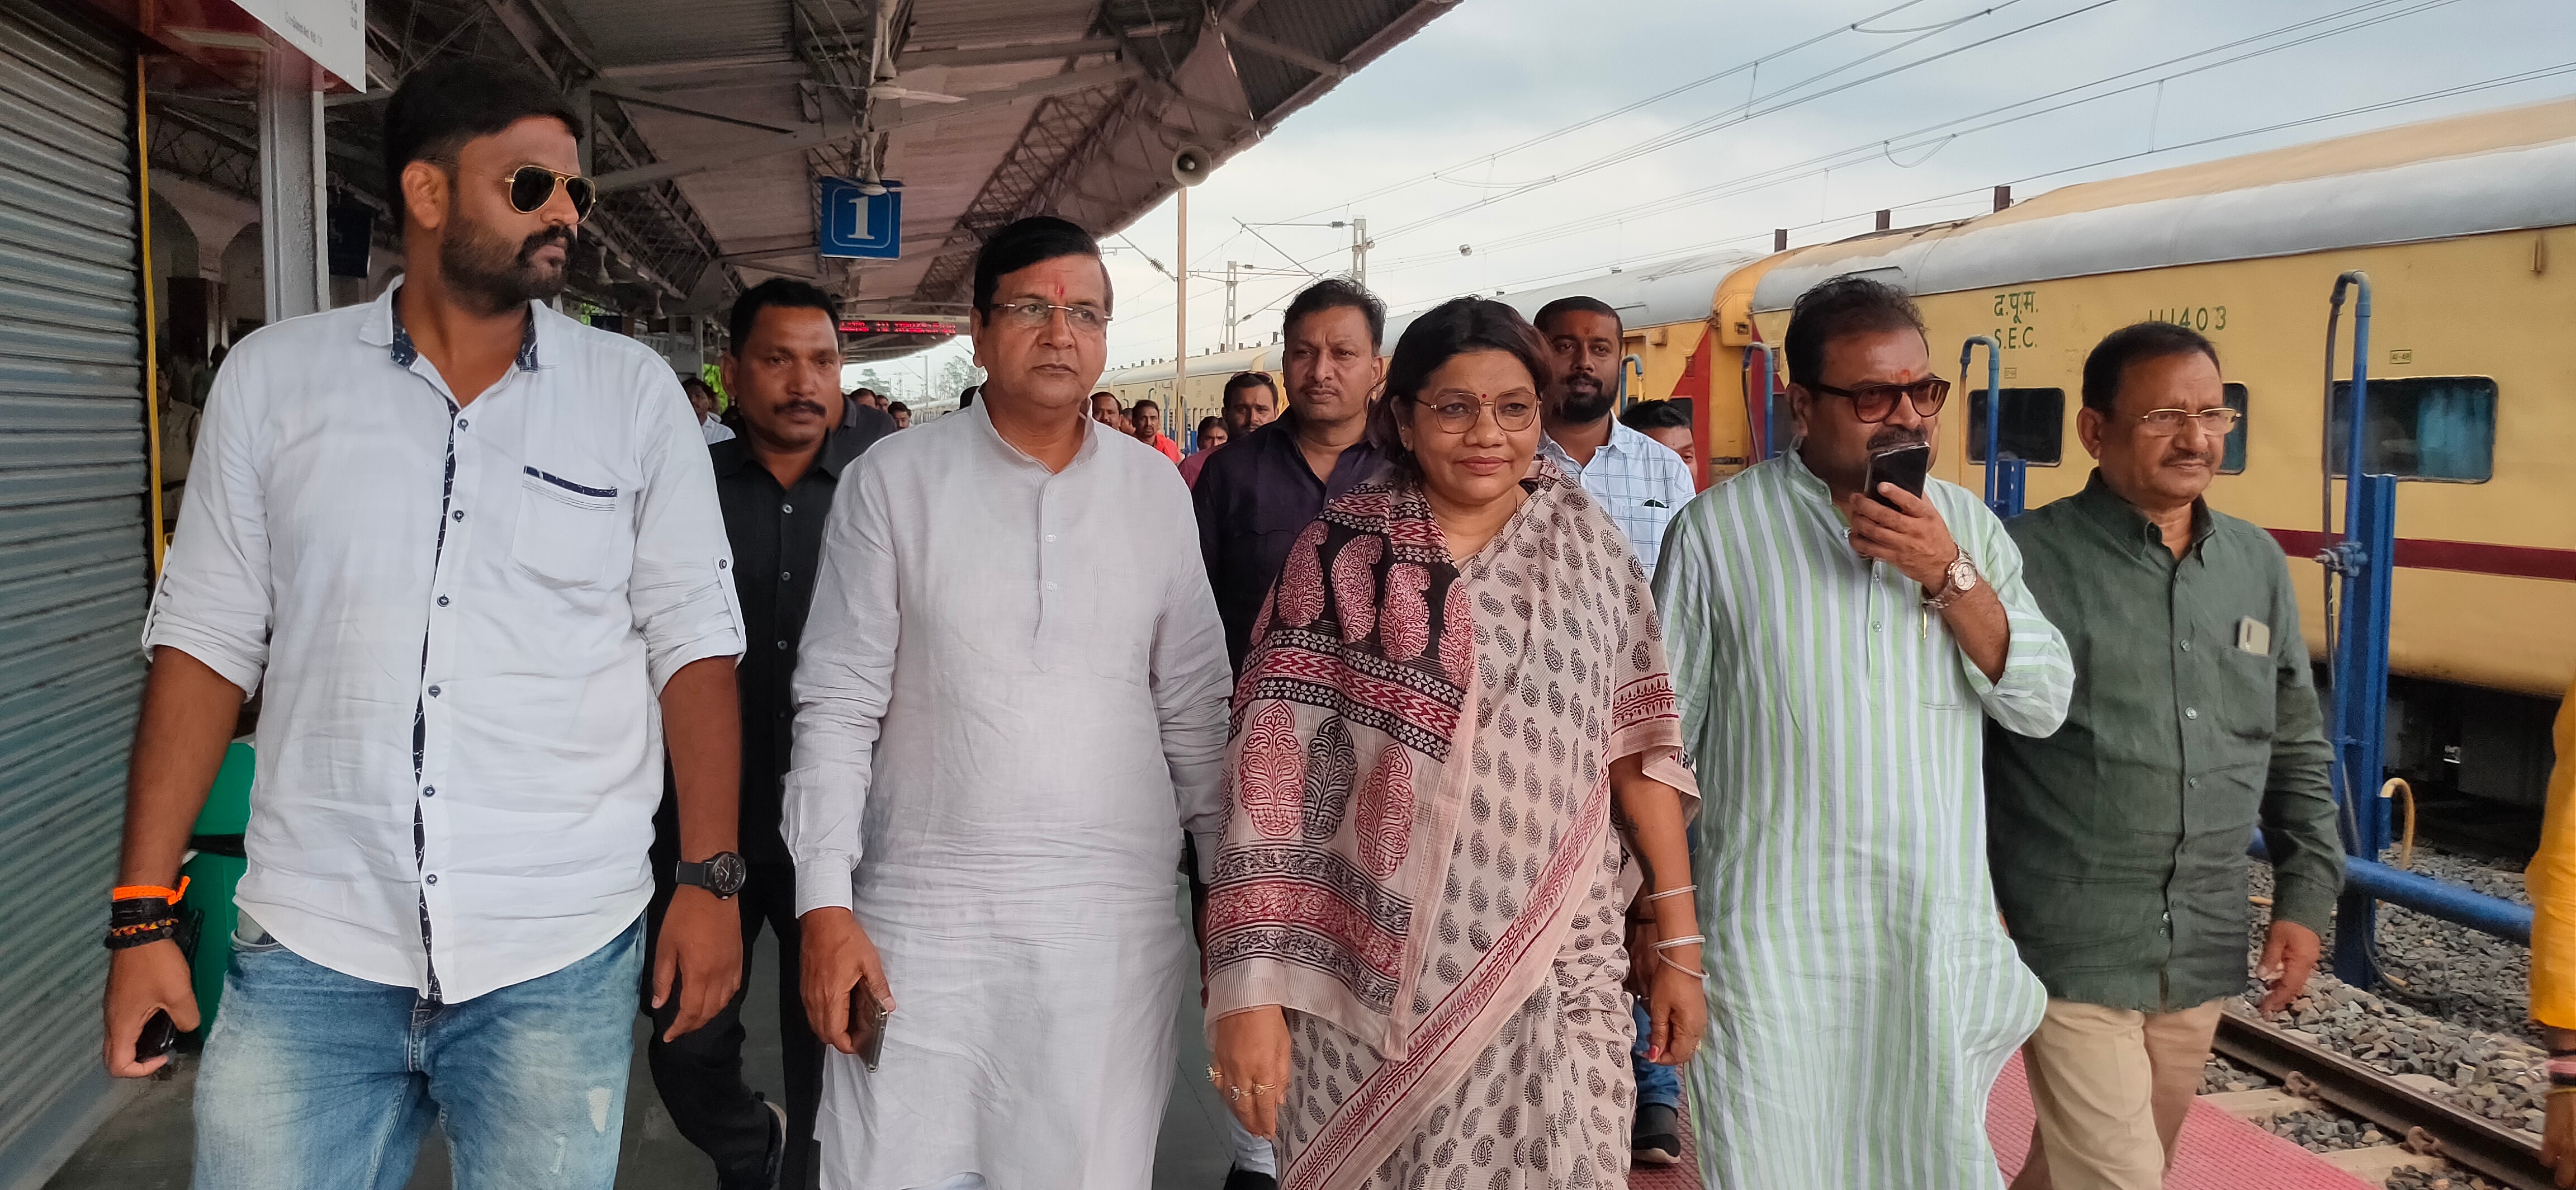 Ambikapur News: 14 जुलाई सरगुजा के लोगों के लिए ऐतिहासिक दिन, अम्बिकापुर से नई दिल्ली ट्रेन का होगा शुभारंभ, जानें रूट